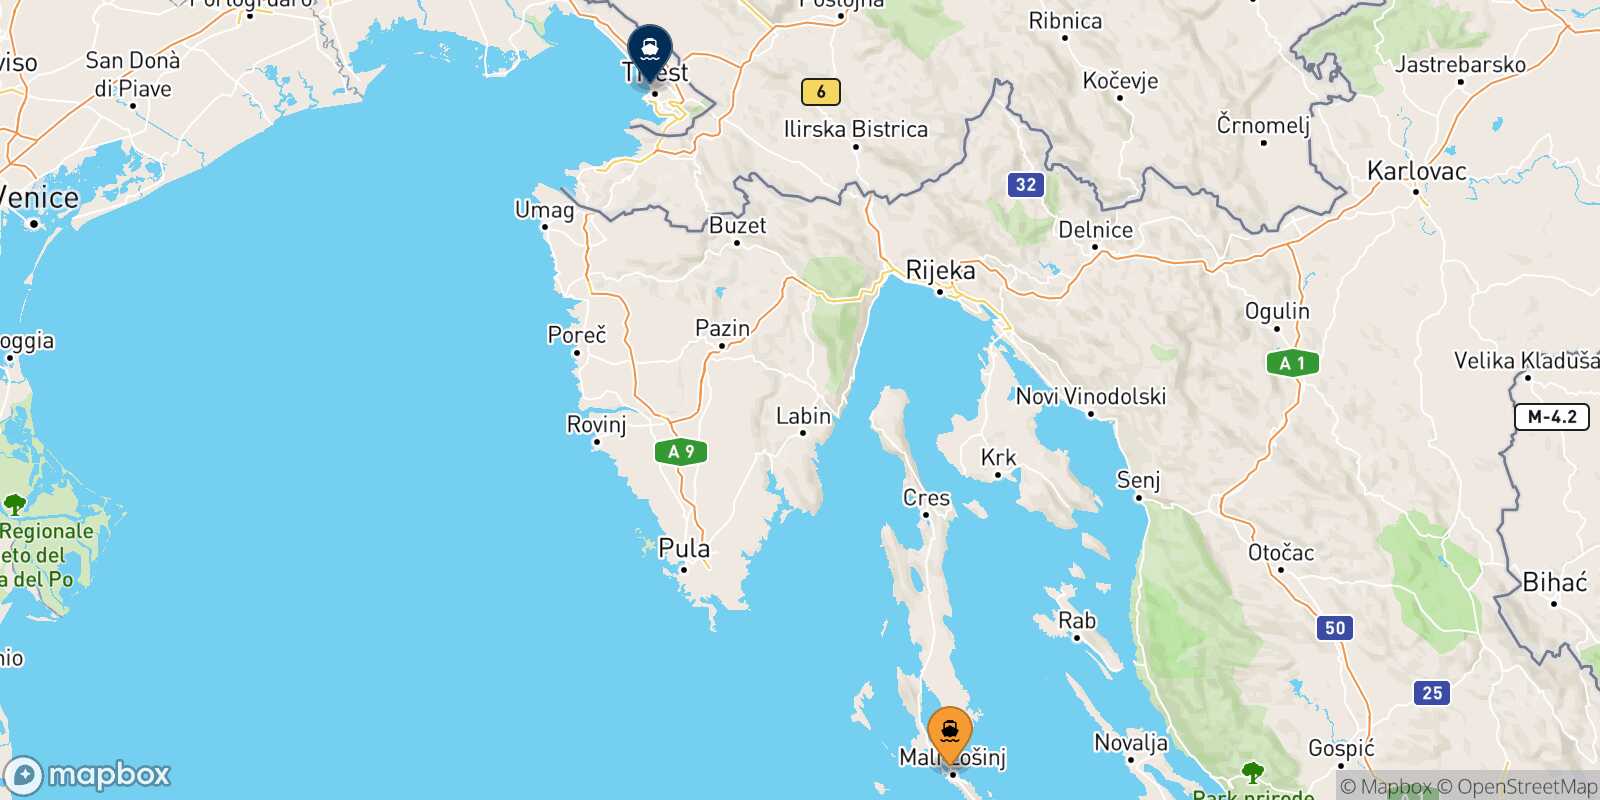 Mali Losinj Trieste route map